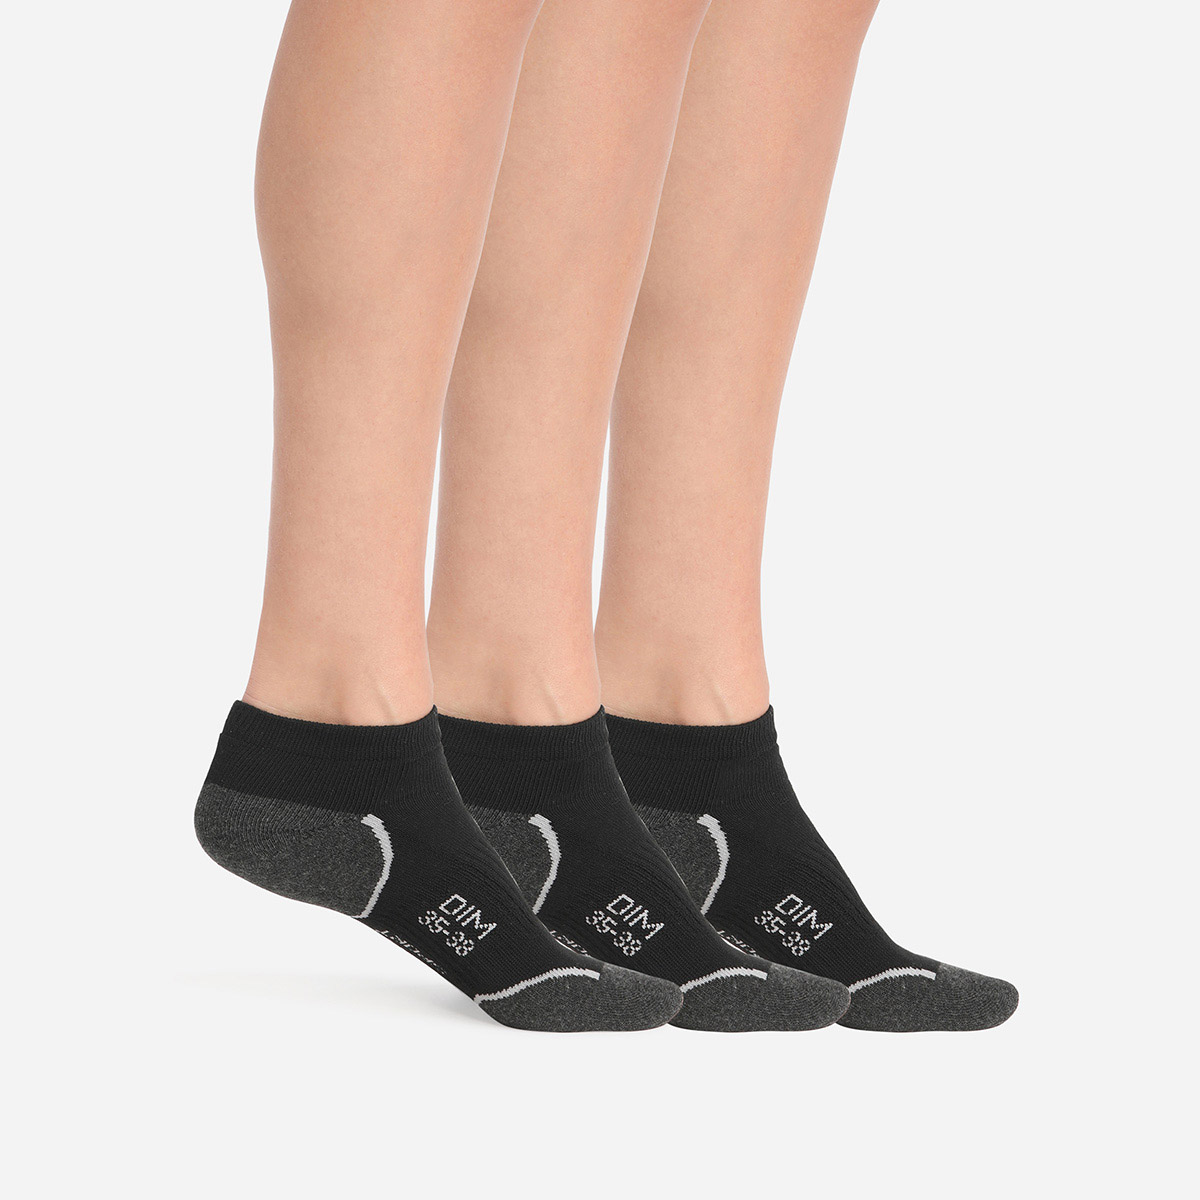 Sada tří dámských sportovních ponožek v černé barvě Dim SPORT IN-SHOE 3x